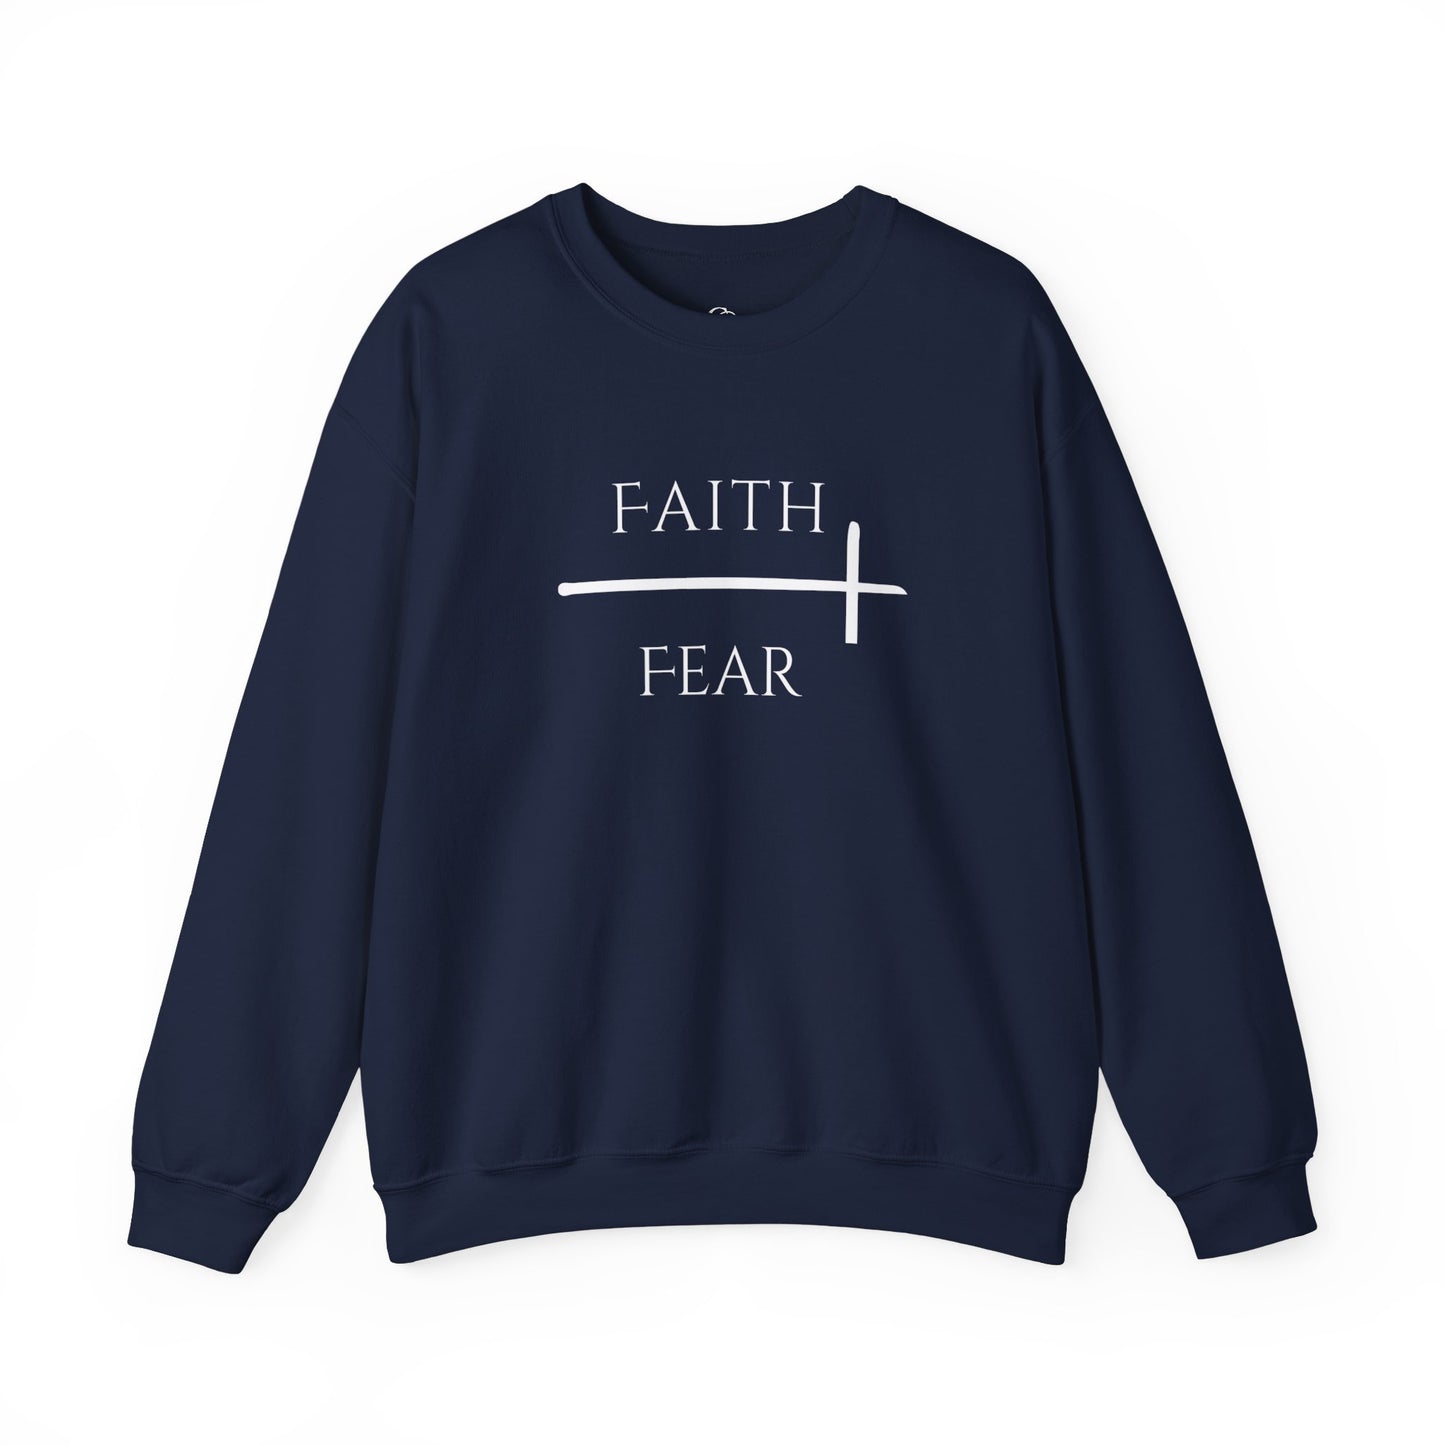 Faith over Fear Crew Neck Sweatshirt